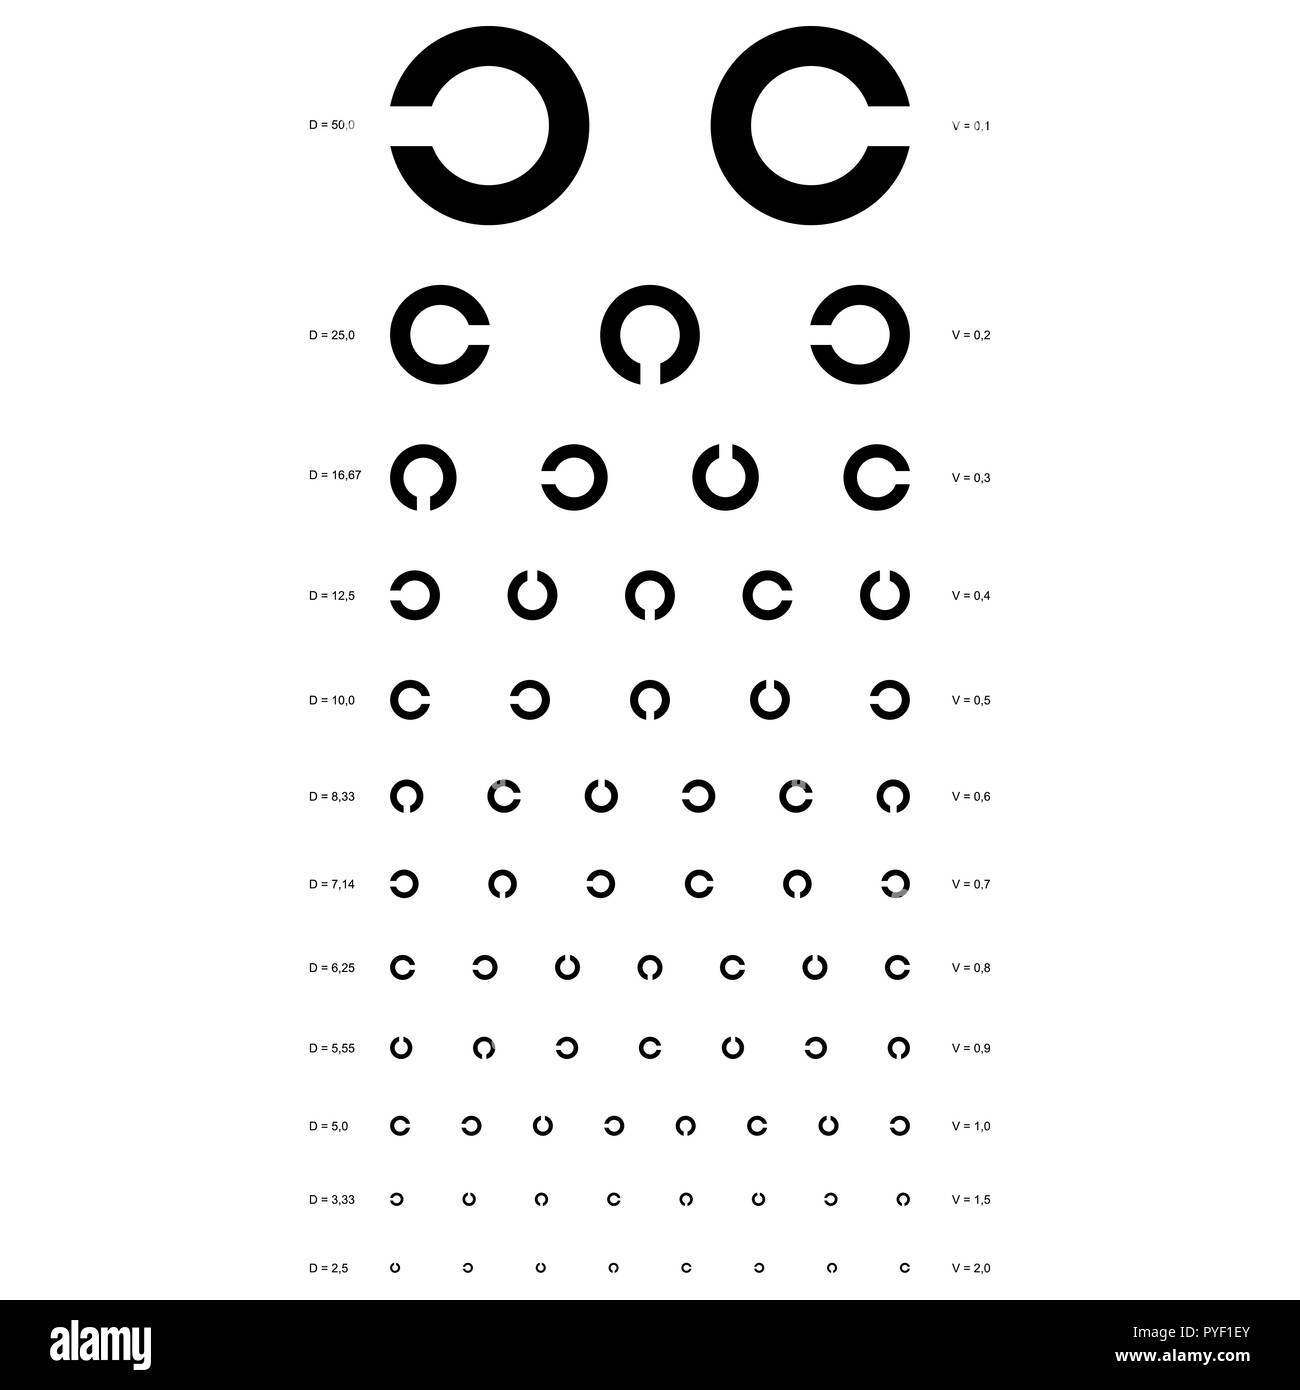 Visual Acuity Snellen Eye Chart